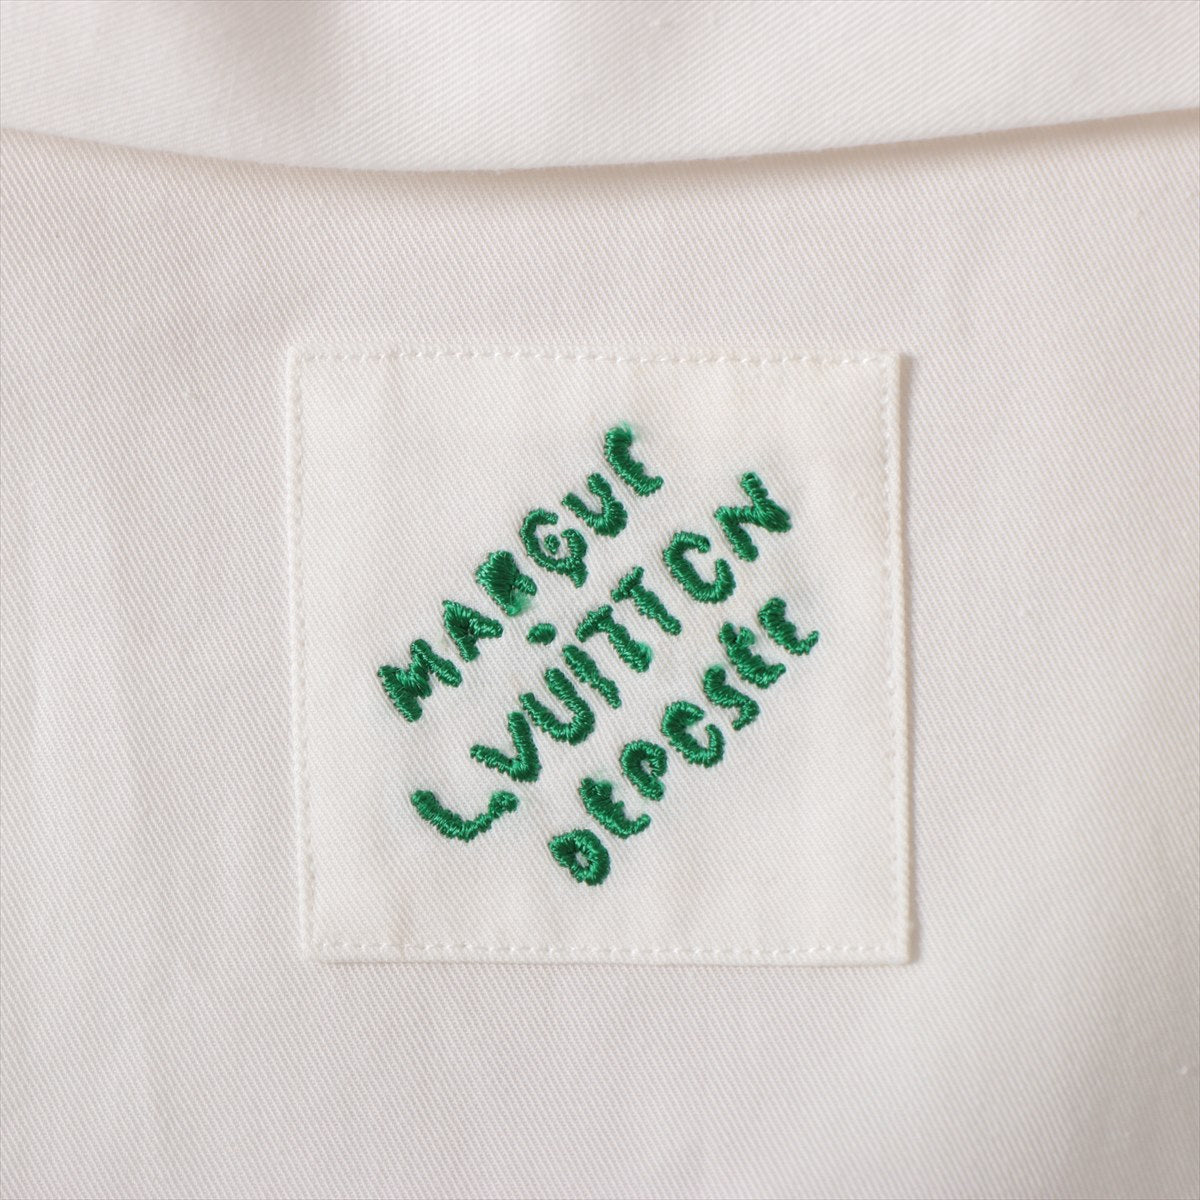 Louis Vuitton 24SS Cotton  L  White Punch Open  Shoes 1AFJDJ RM241